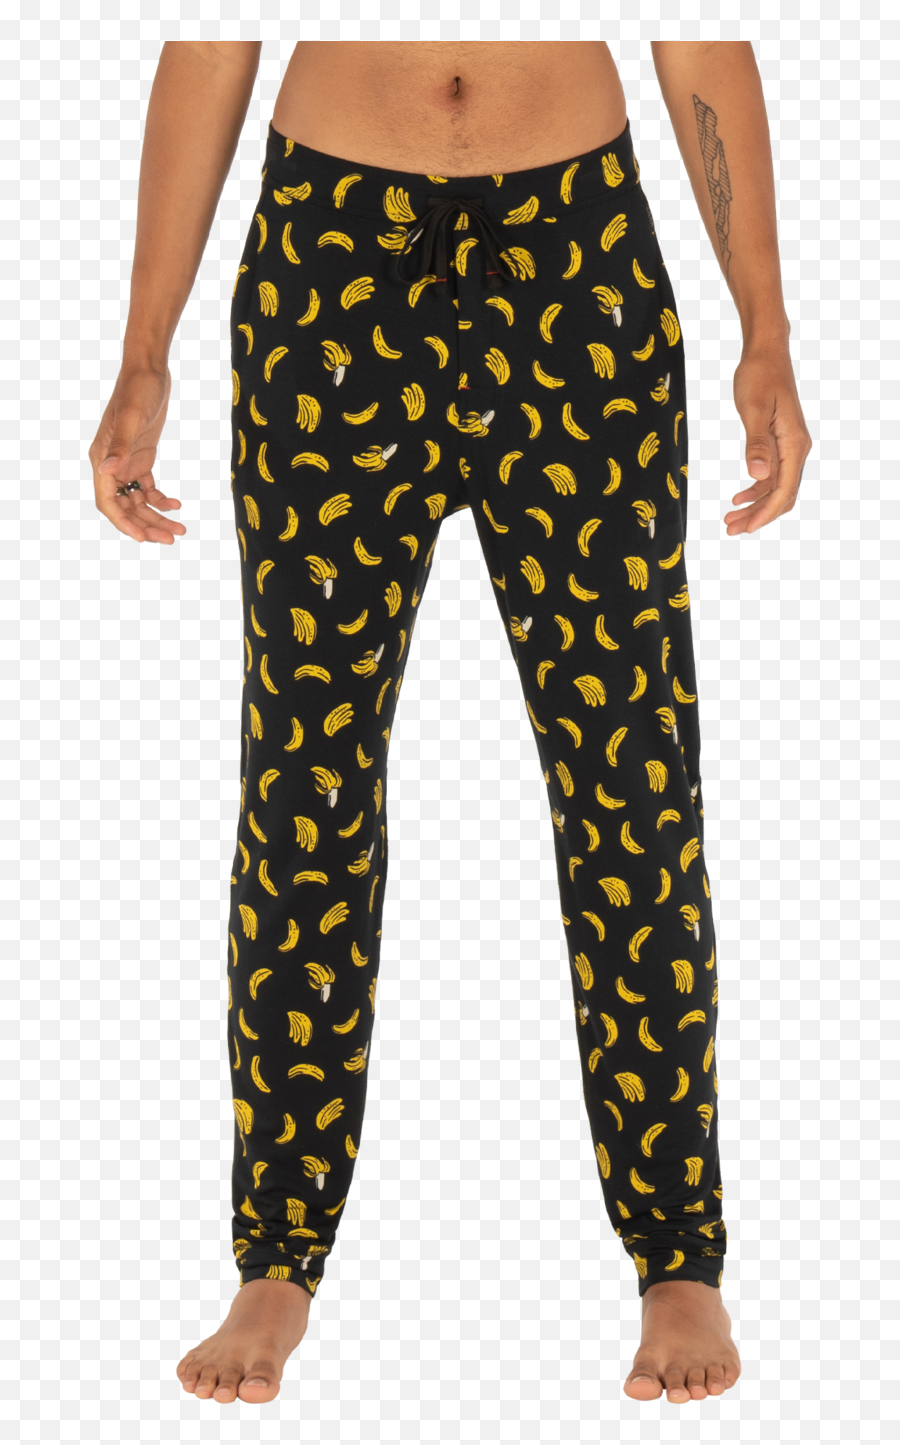 Sleepwalker Pant - Saxx Pant Emoji,Soft Pj Pants Emojis